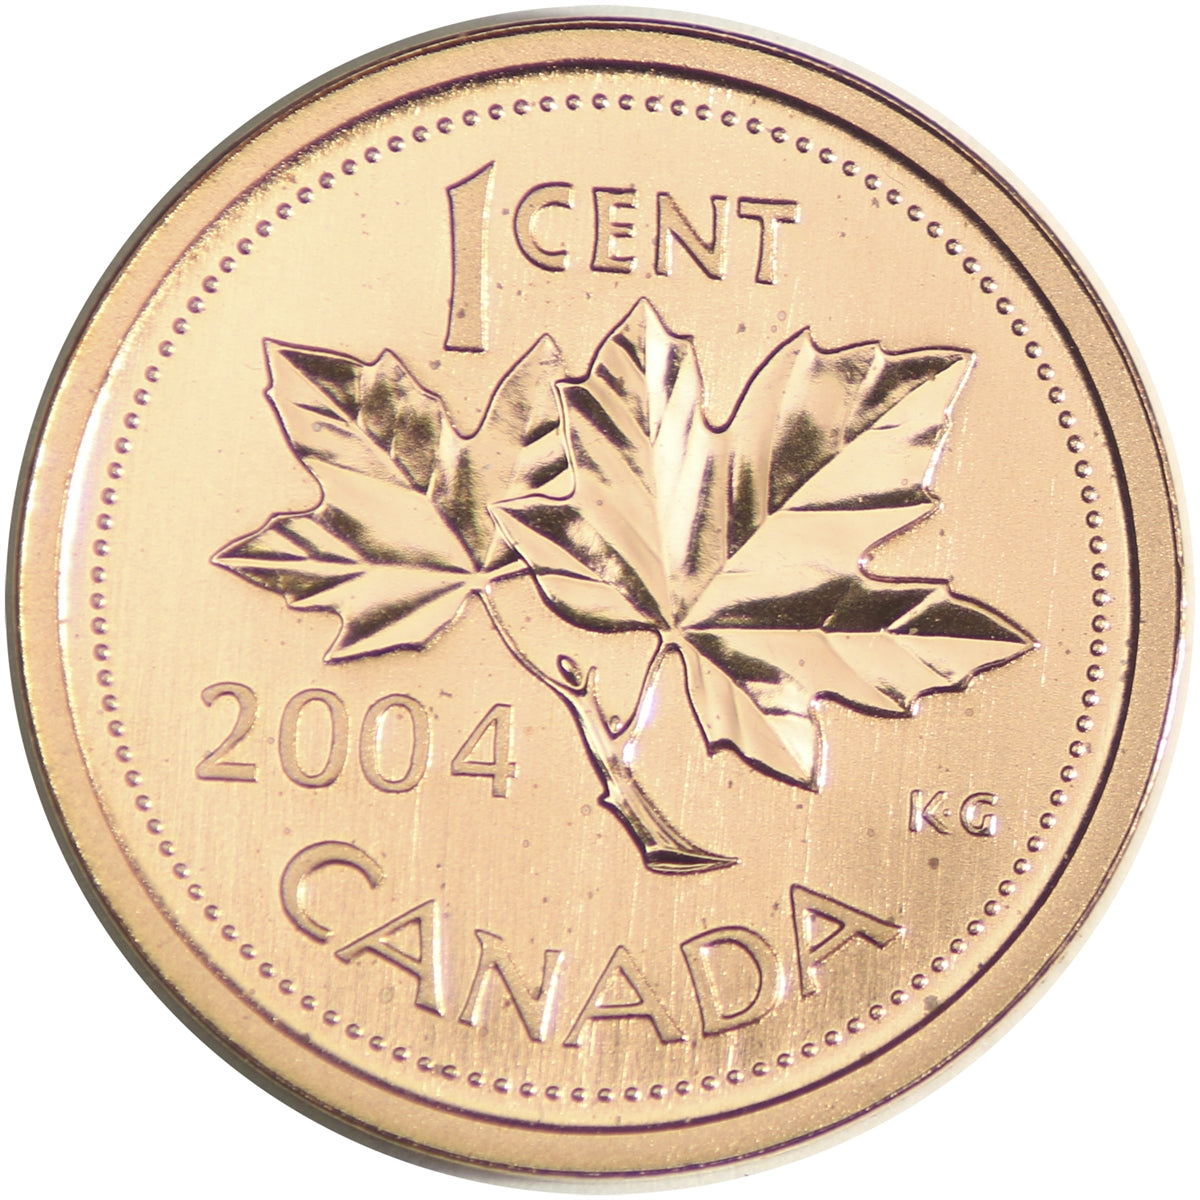 2004P Canada 1-cent Specimen